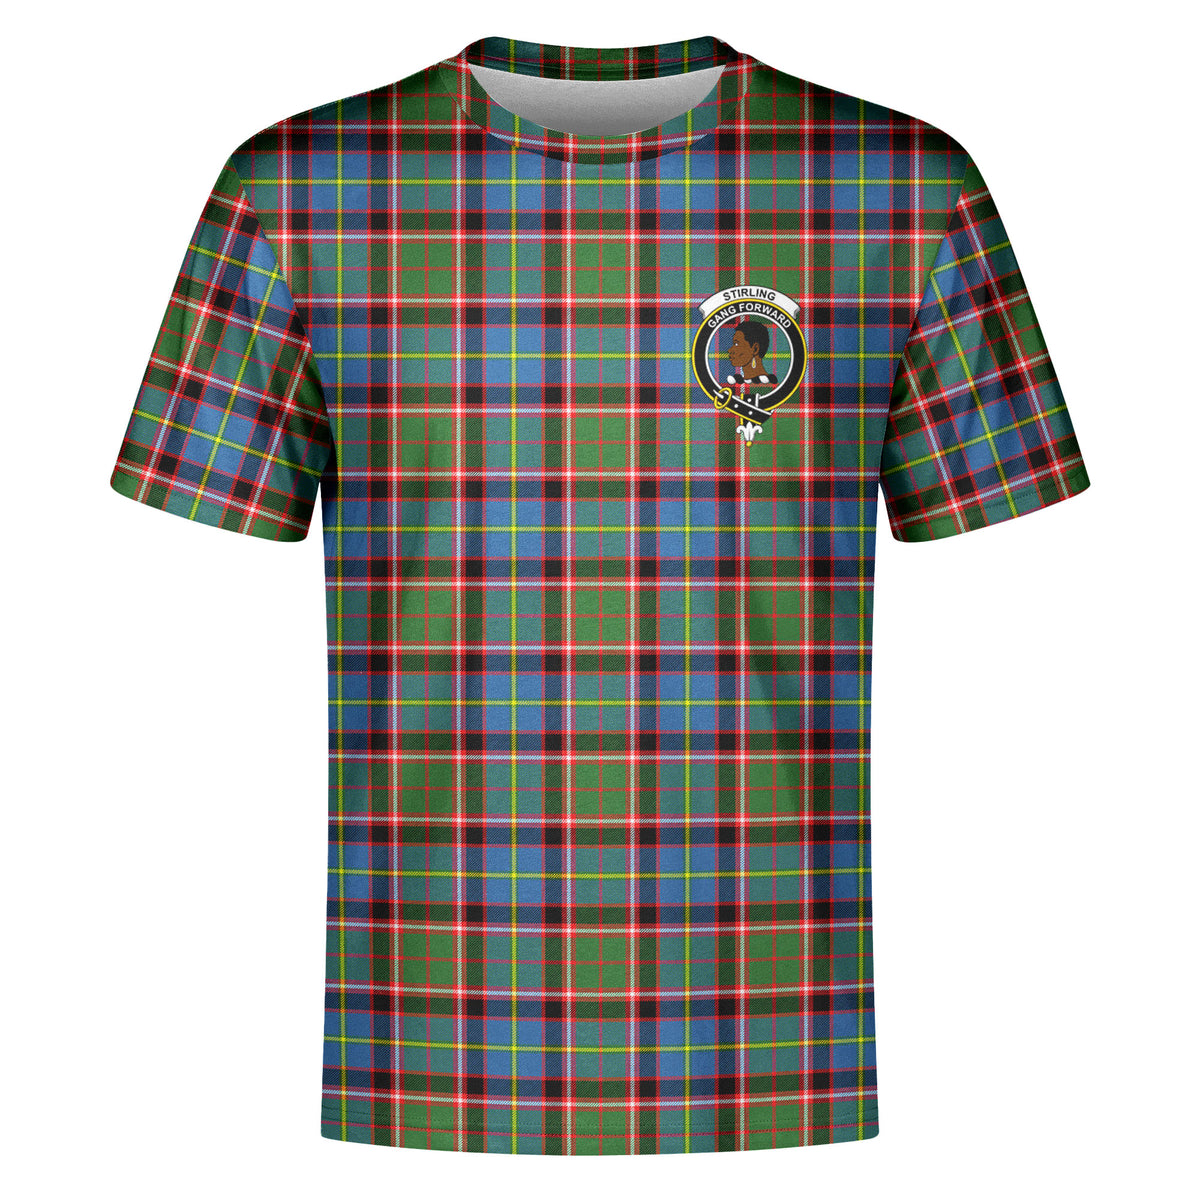 Stirling (of Keir) Tartan Crest T-shirt